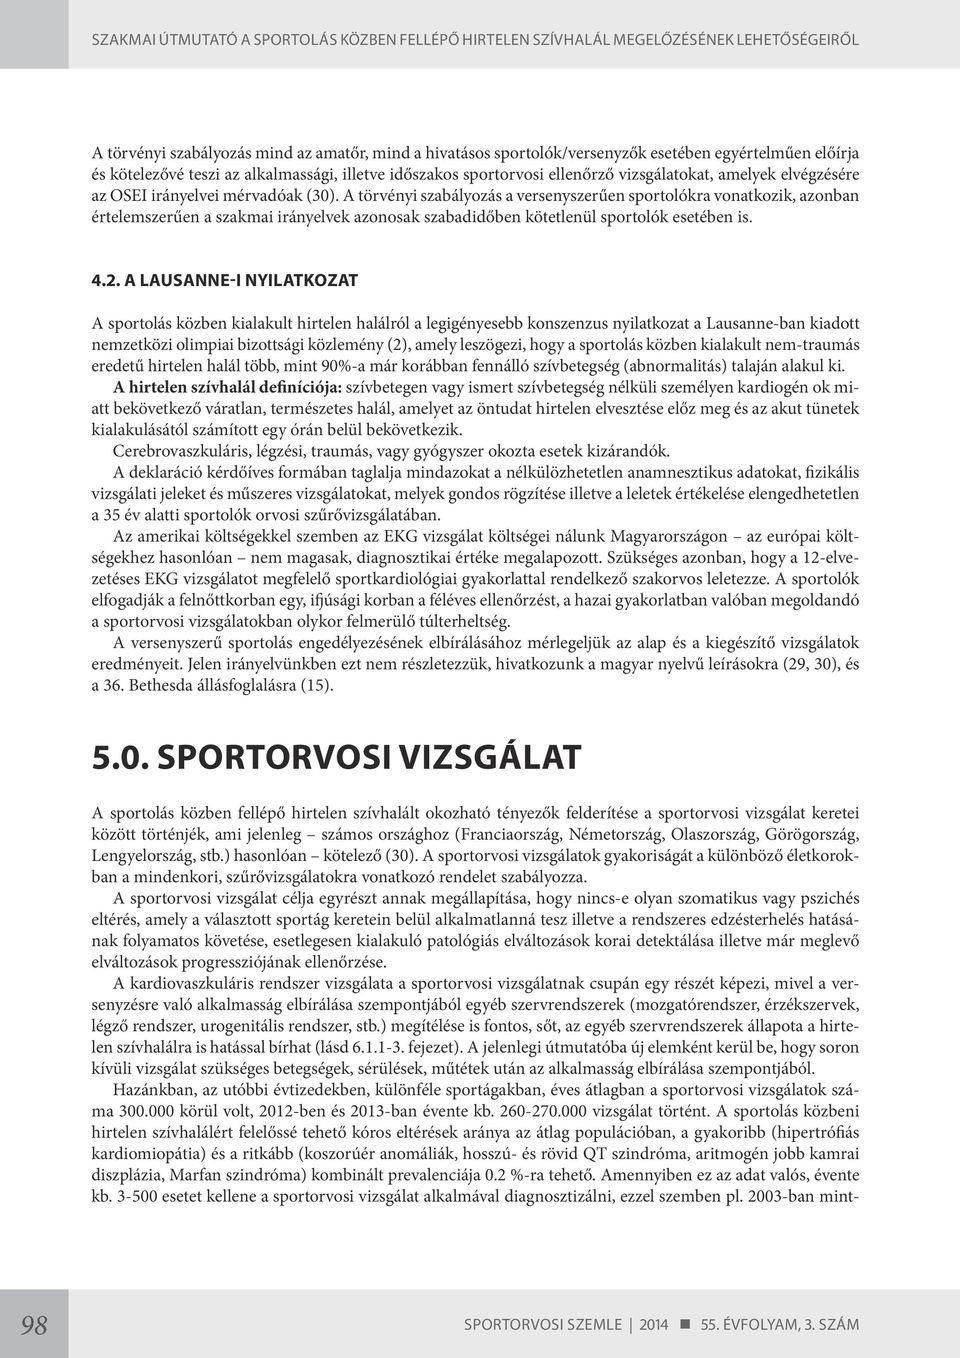 A törvényi szabályozás a versenyszerűen sportolókra vonatkozik, azonban értelemszerűen a szakmai irányelvek azonosak szabadidőben kötetlenül sportolók esetében is. 4.2.